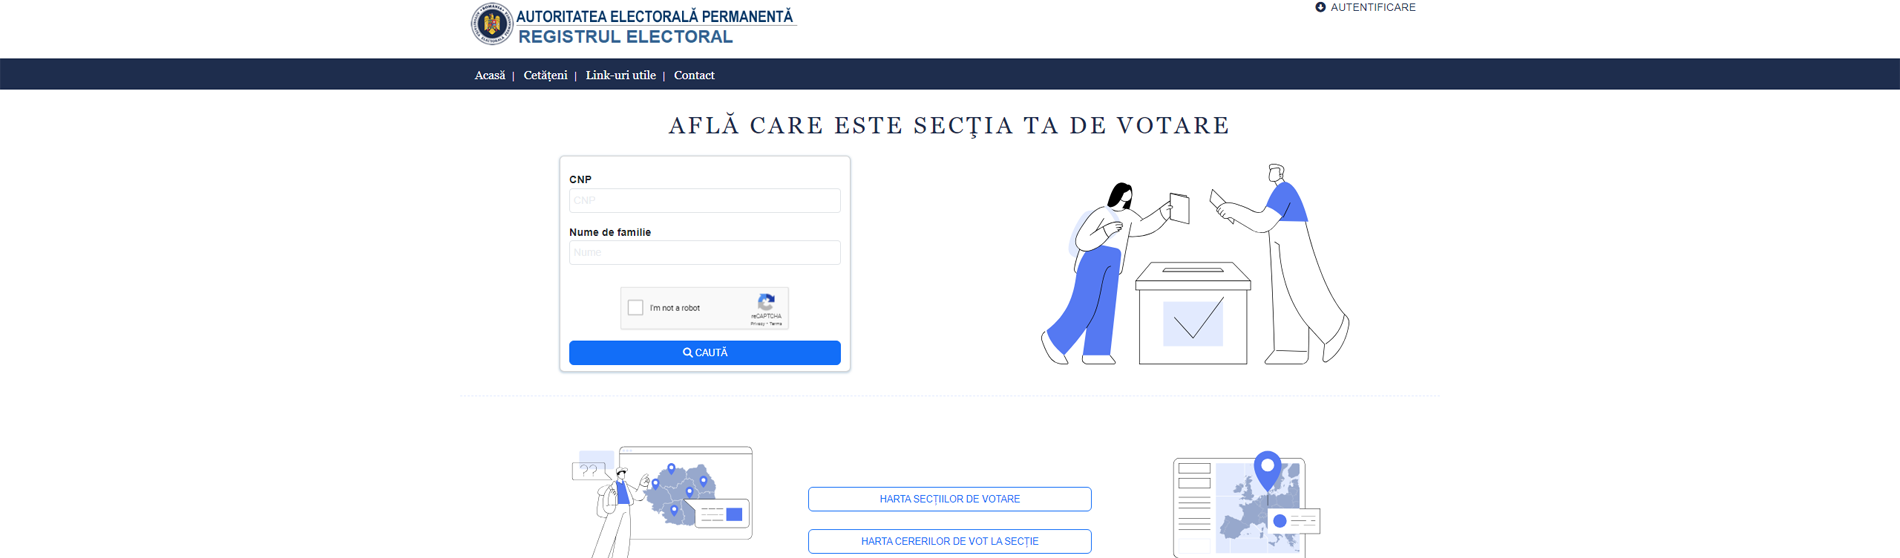 Registrul electoral